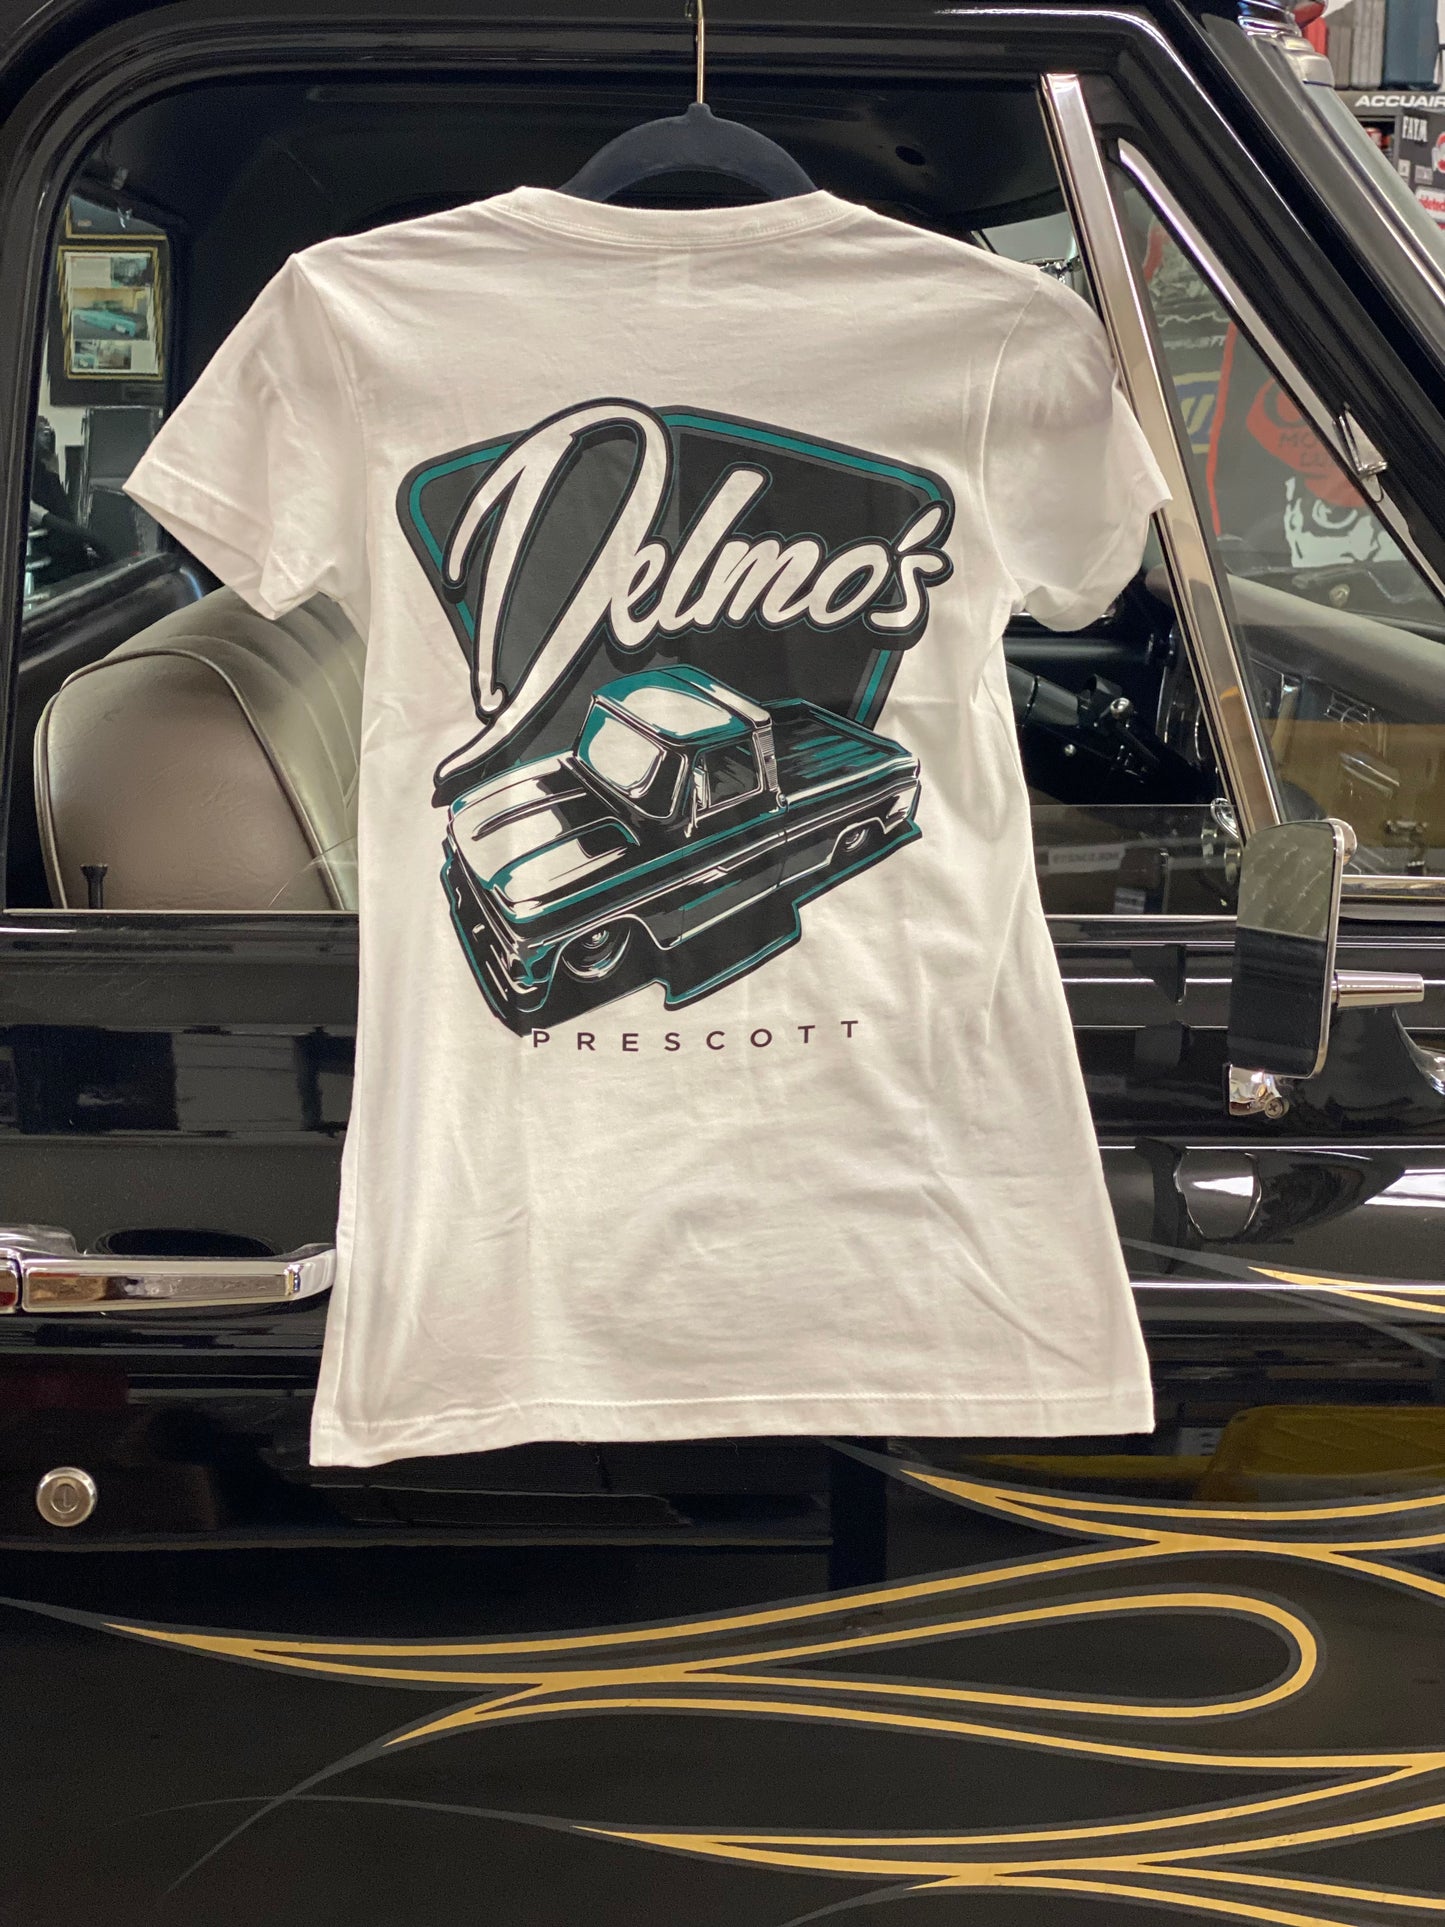 Delmo's Womens White Prescott Crew Neck T-Shirt